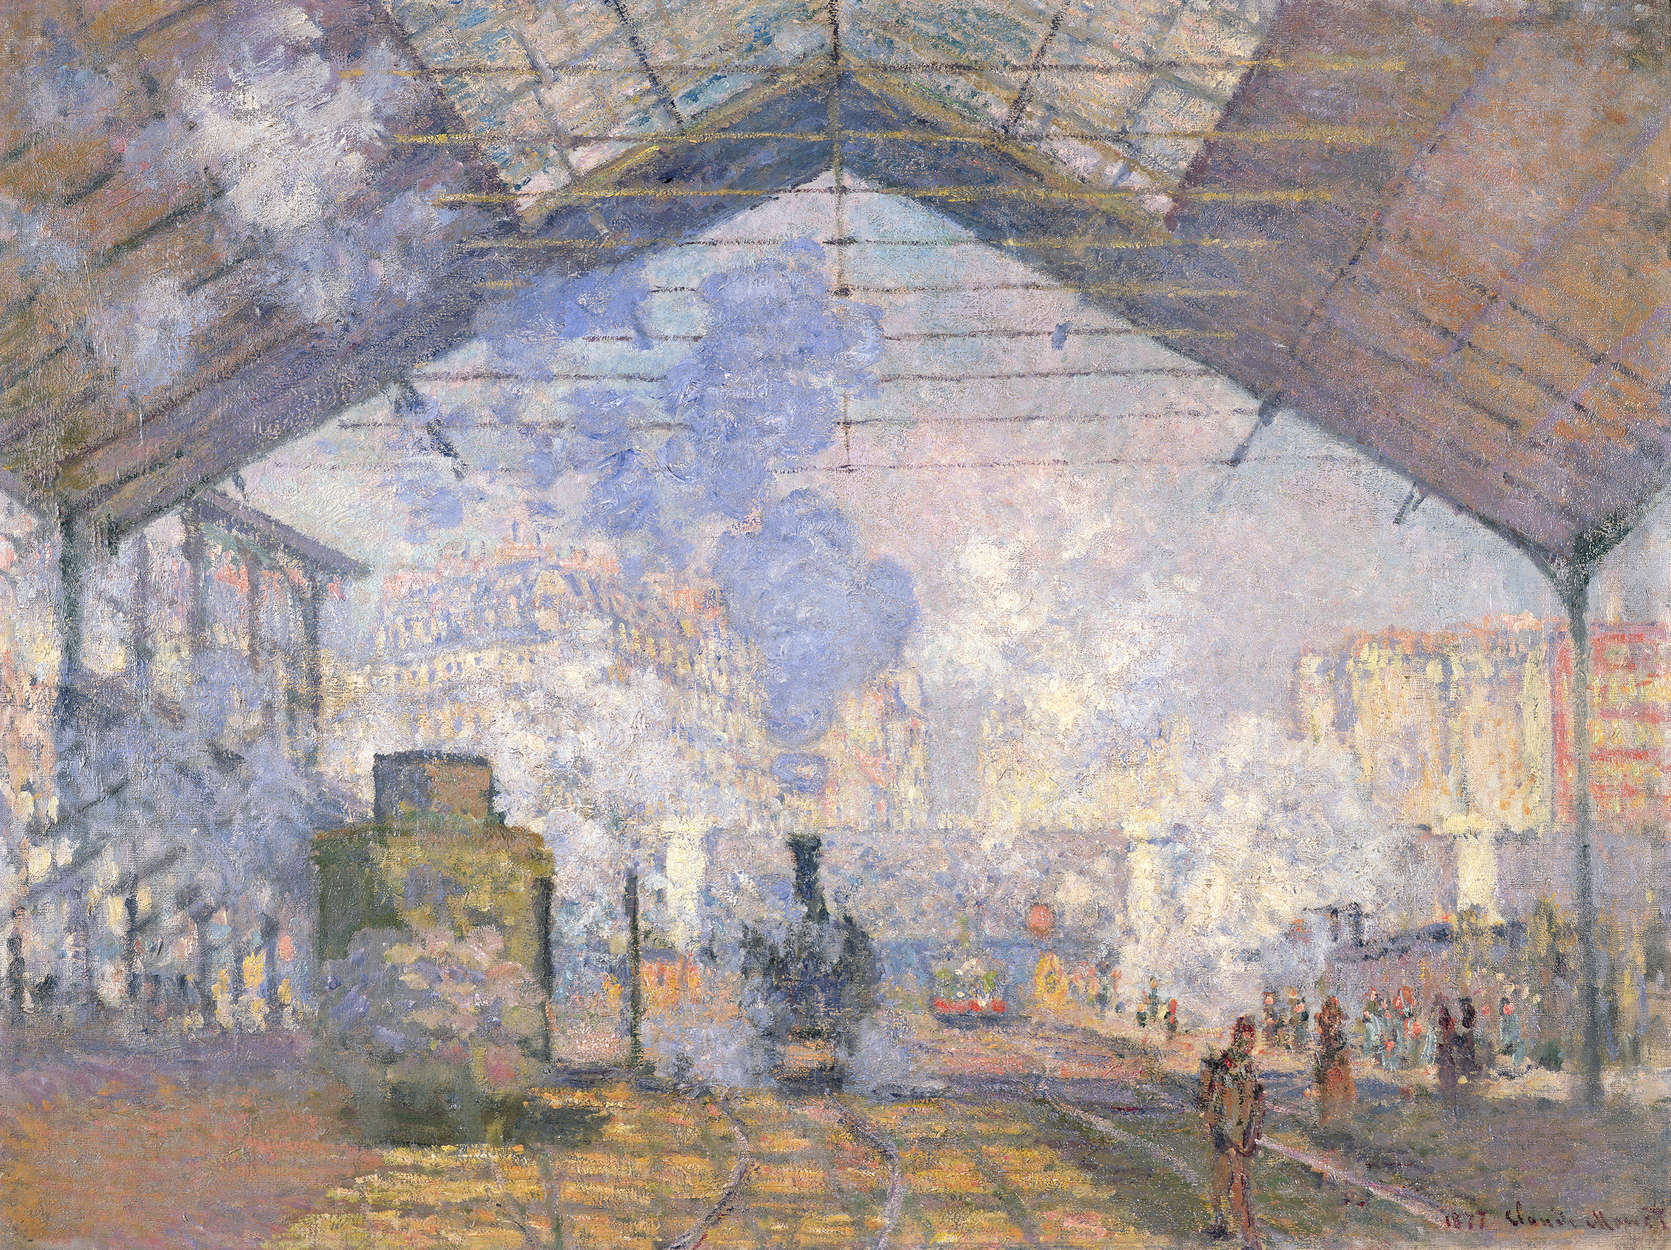             Fototapete "Gare St. Lazare" von Claude Monet
        